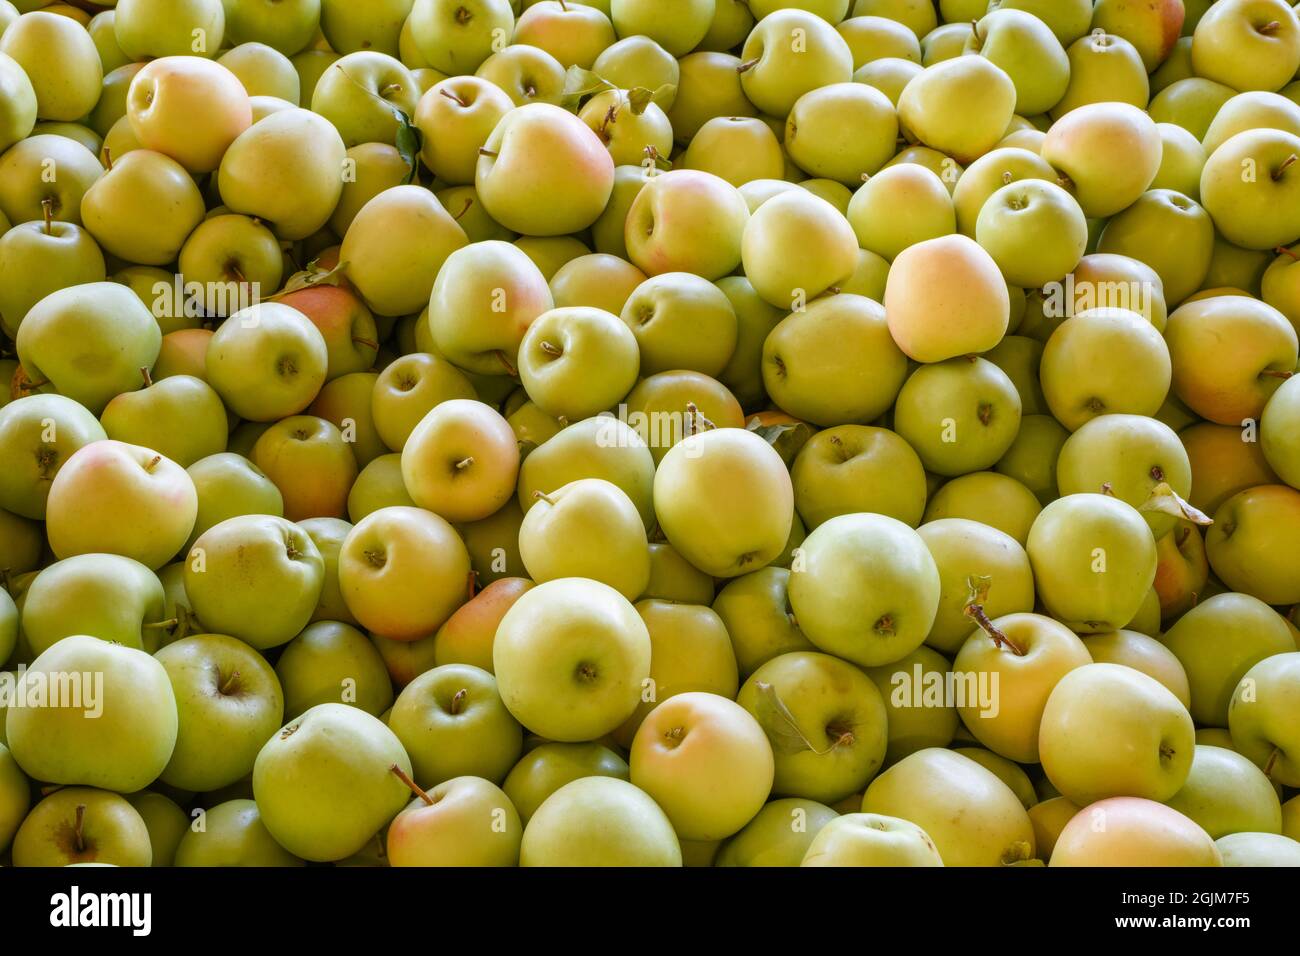 Eine Handelsgruppe von Washington Golden Delicious Äpfeln, die im September an Verpackungszentren verteilt werden soll Stockfoto